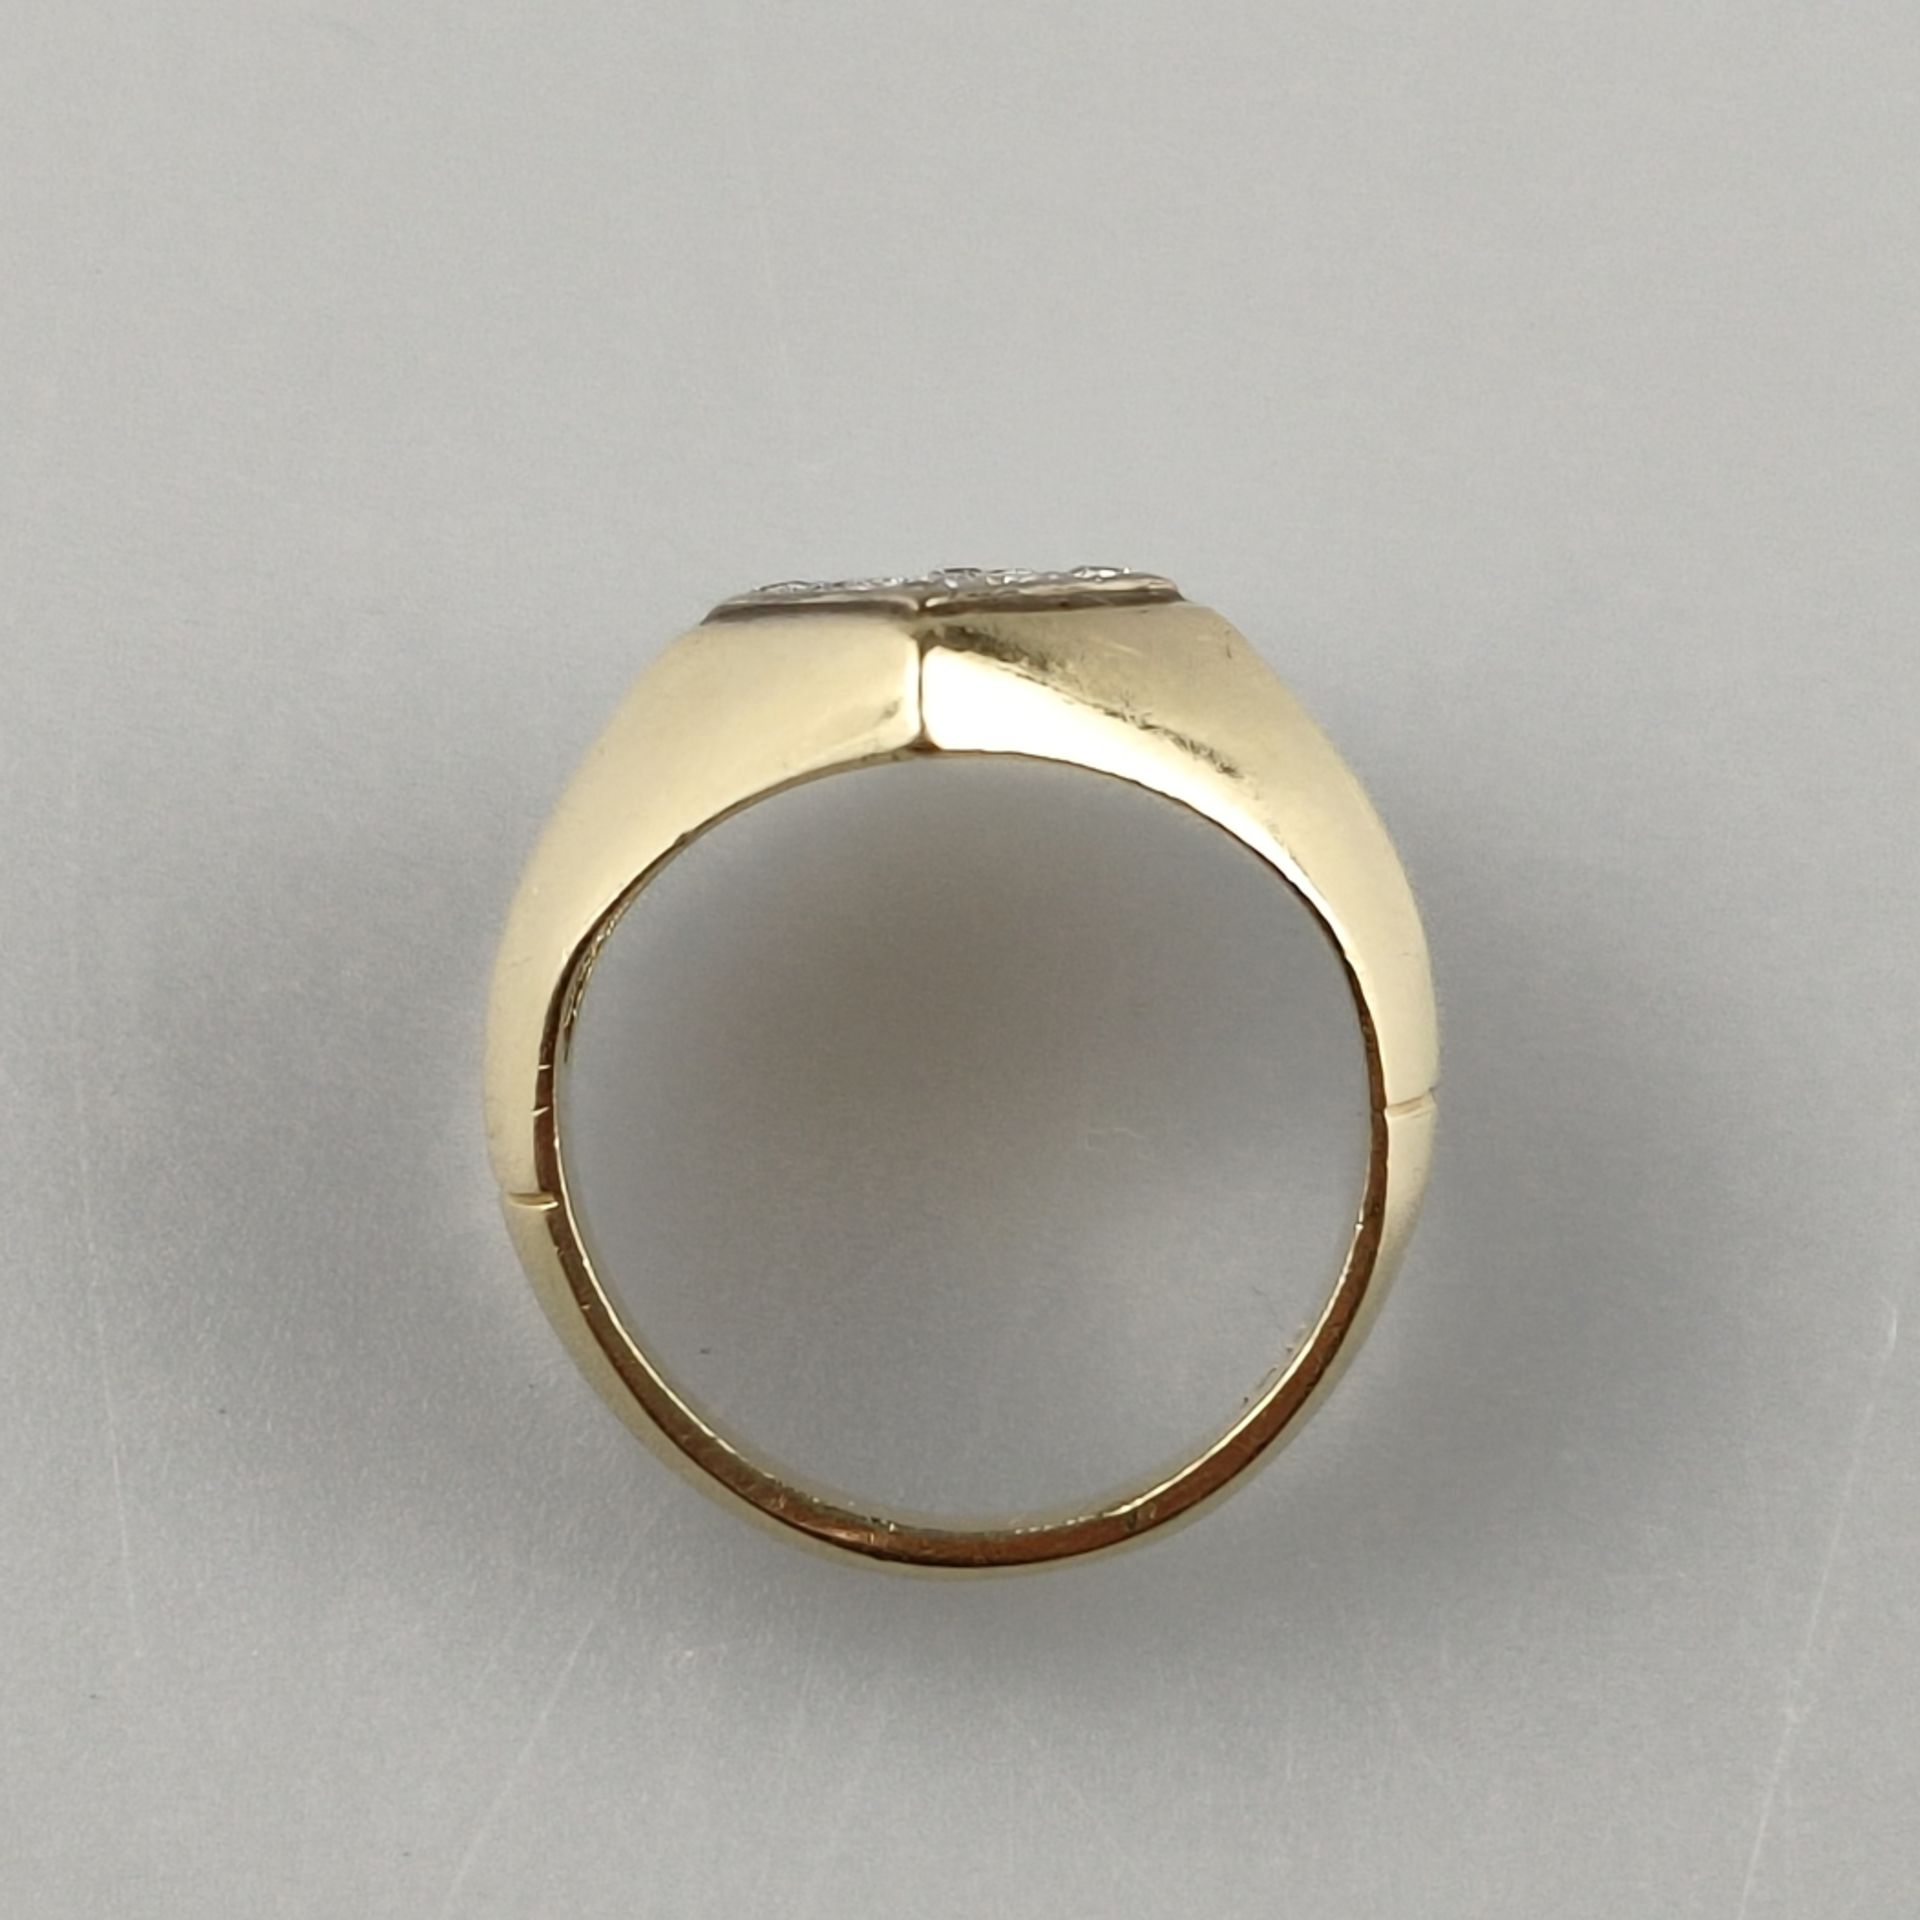 Diamantring - Gelbgold 585/000 (14K), rautenförmiger Ringkopf (ca. 1,6 x 1,1 cm) ausgefasst mit 16  - Bild 5 aus 5